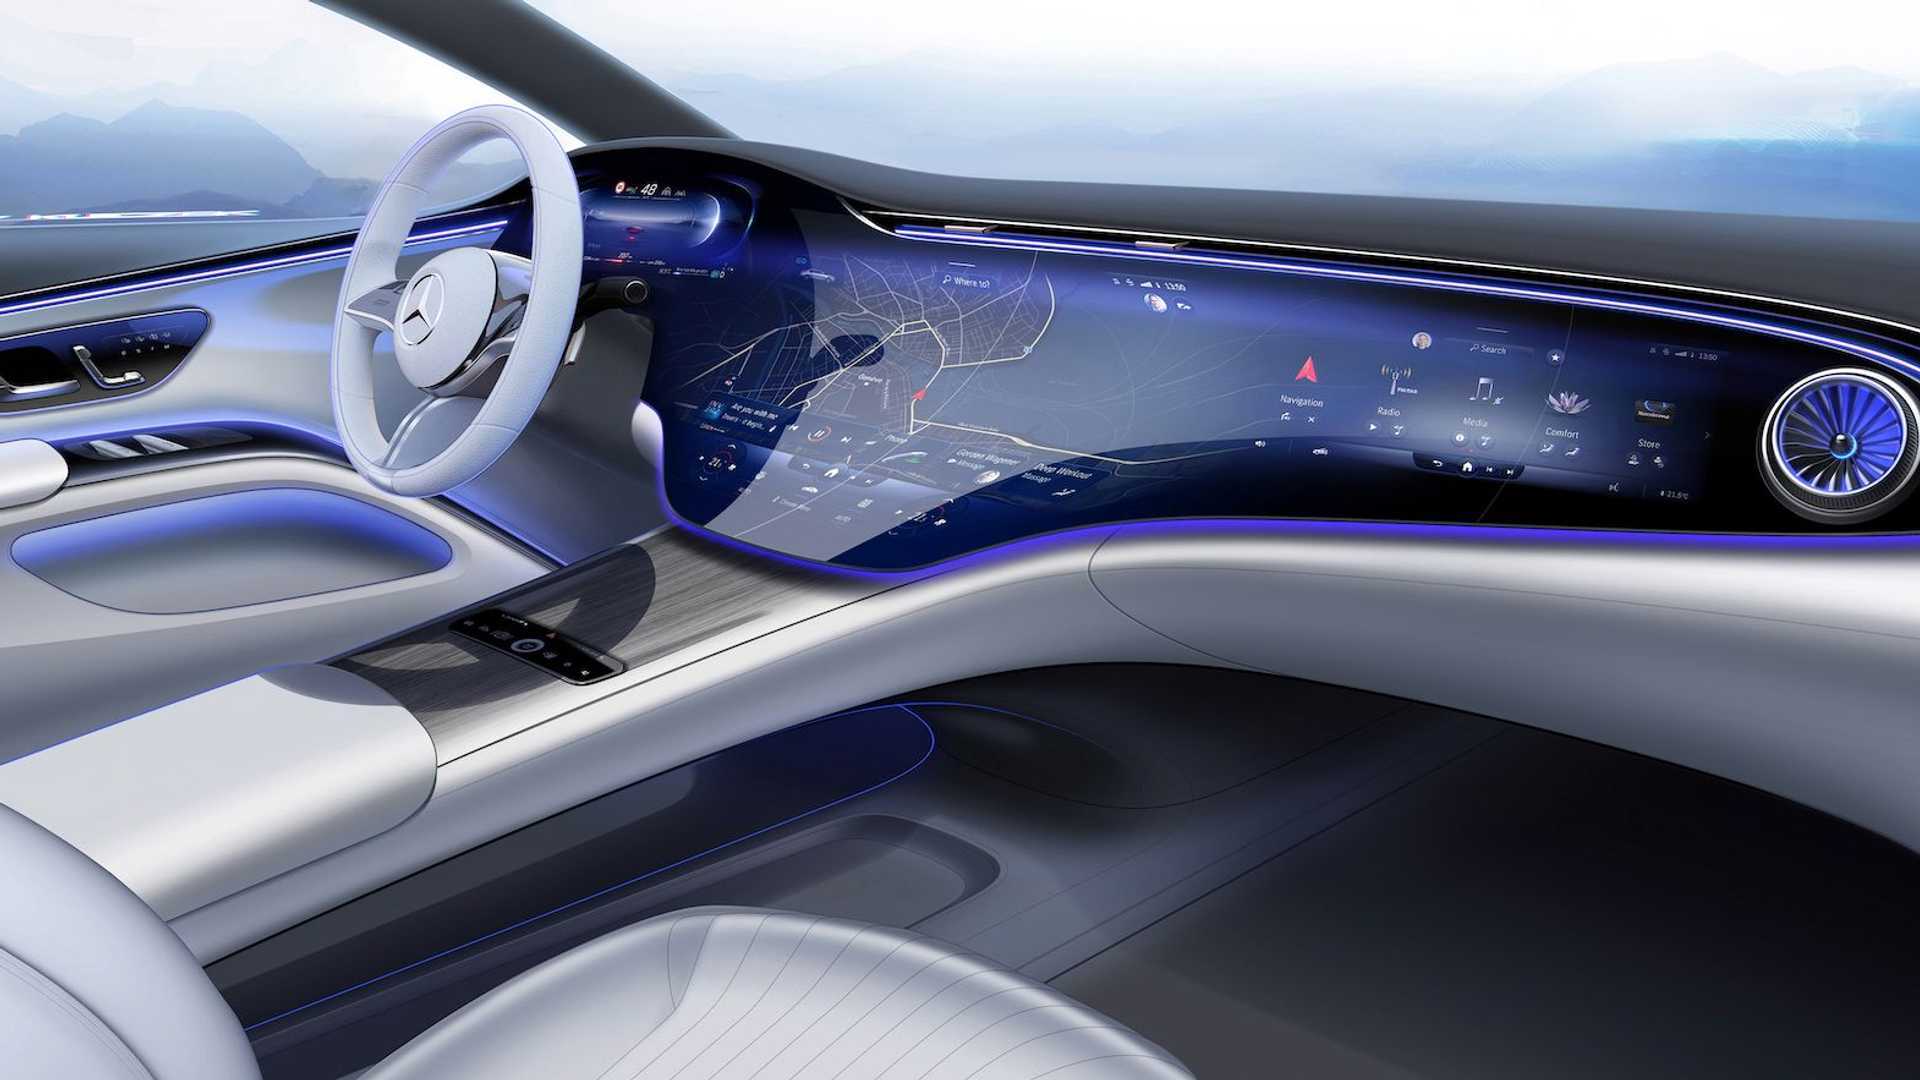 2022款奔驰eqs未来派内饰官图全面展示配备56英寸mbux超大屏幕